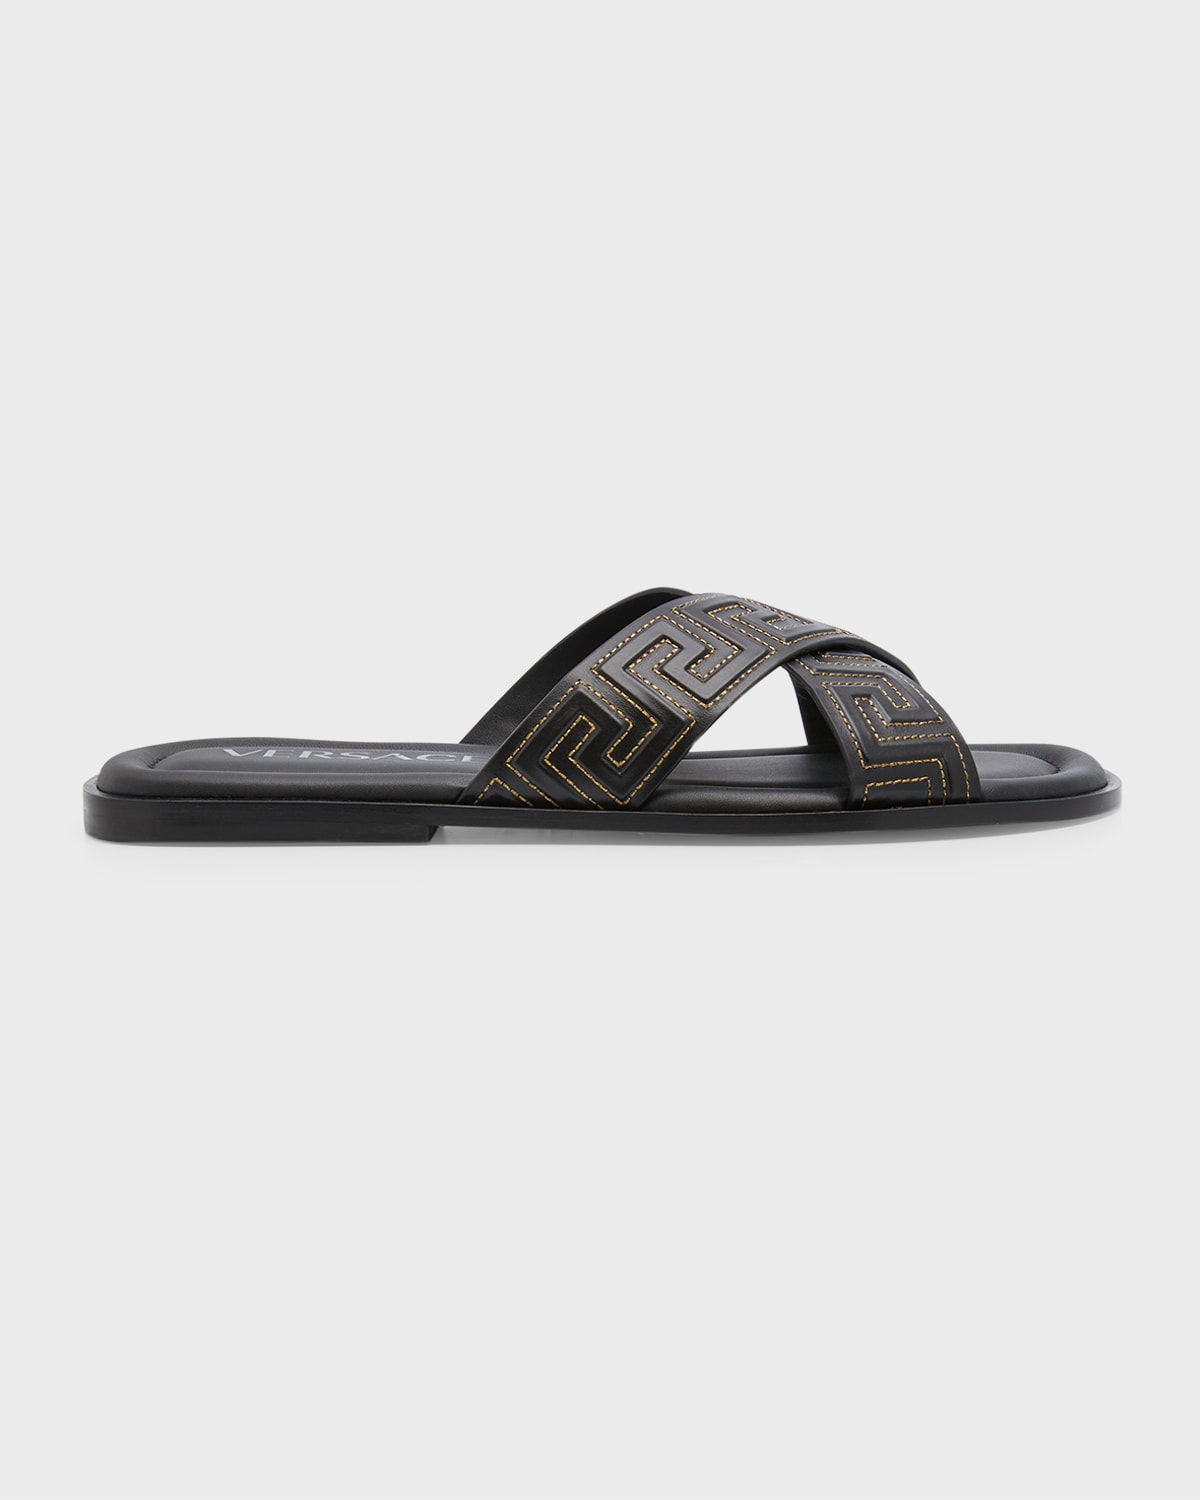 Givenchy Men's G Plage Crisscross Slide Sandals | Neiman Marcus